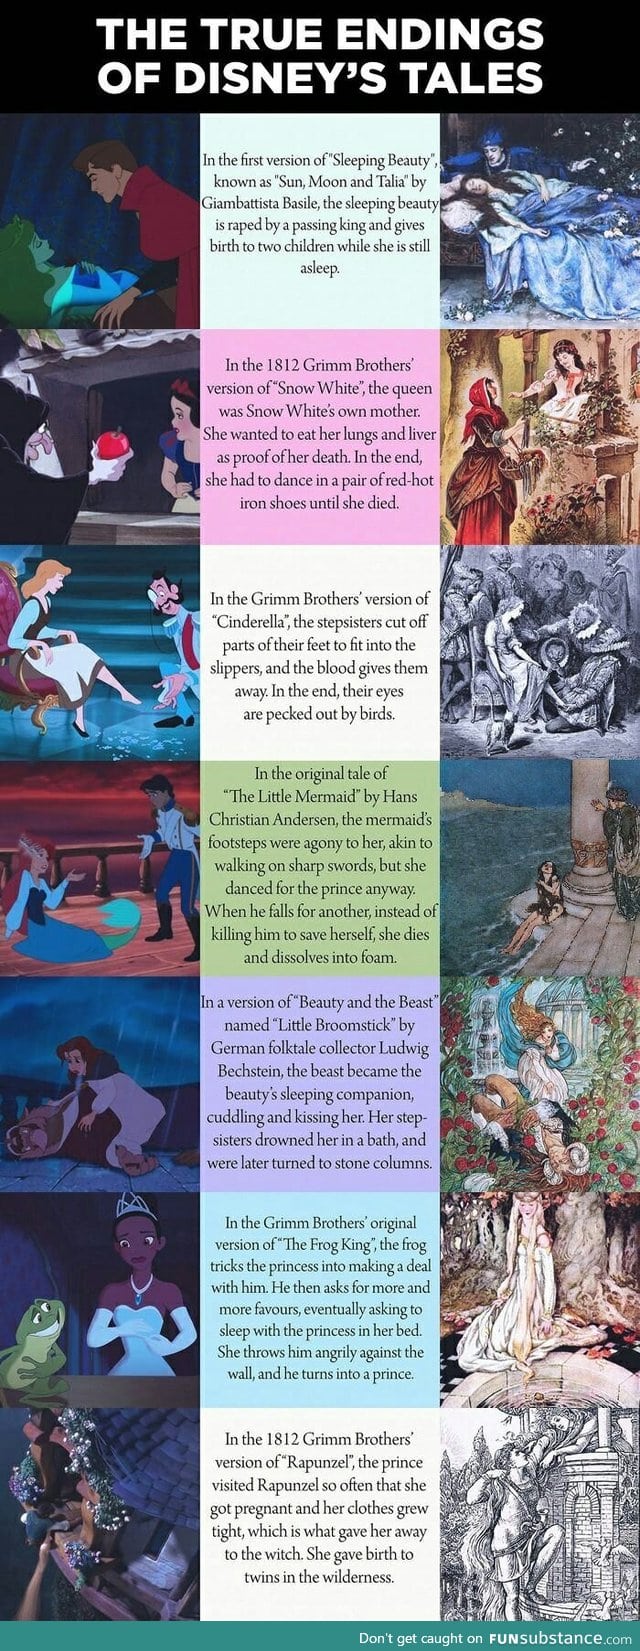 True endings of Disney tales